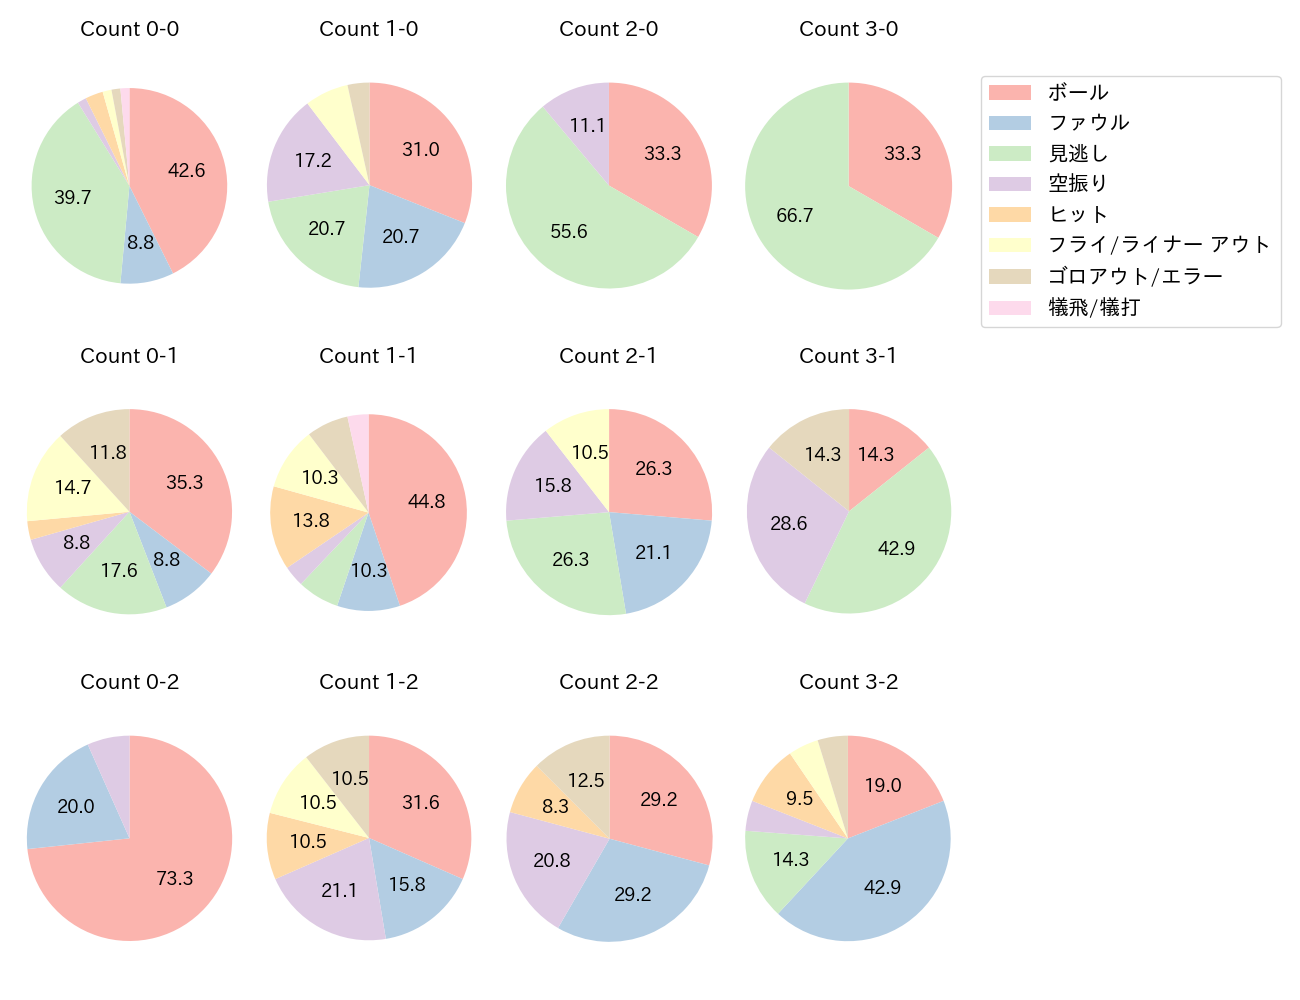 周東 佑京の球数分布(2021年5月)